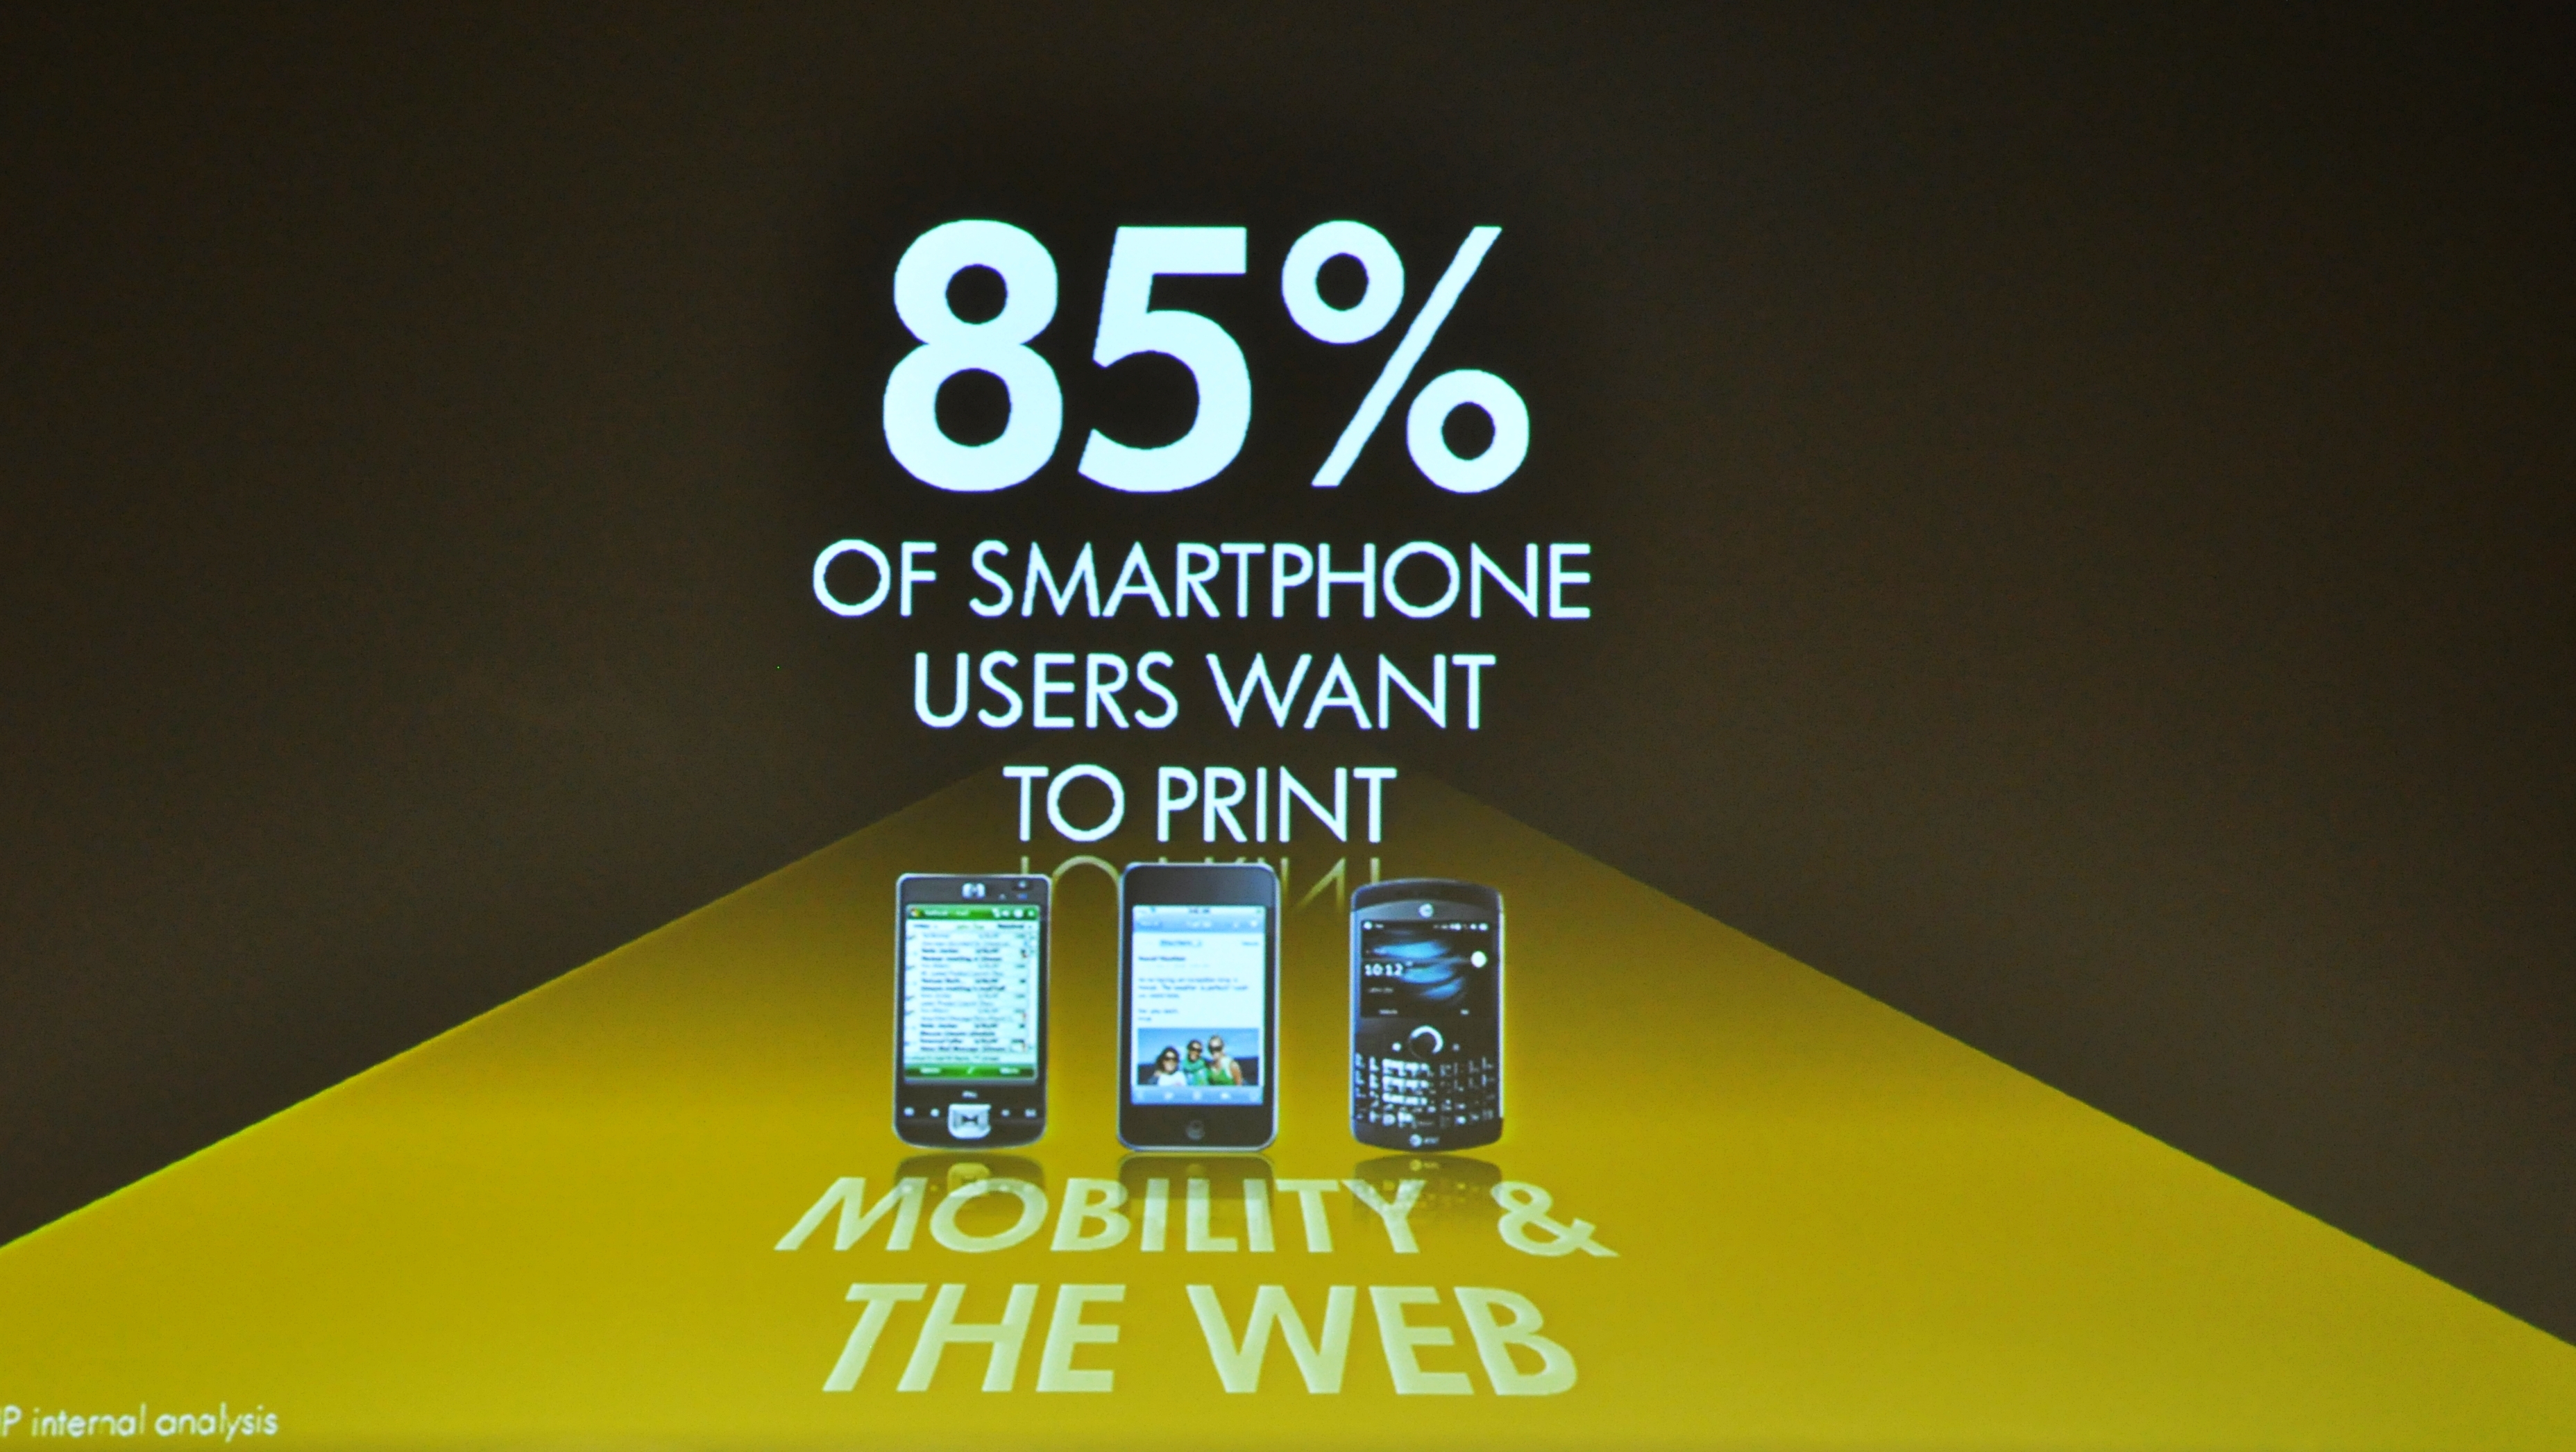 HP Innovation Summit '10: Akıllı telefon kullanıcılarının %85'i yazıcıdan çıktı almak istiyor